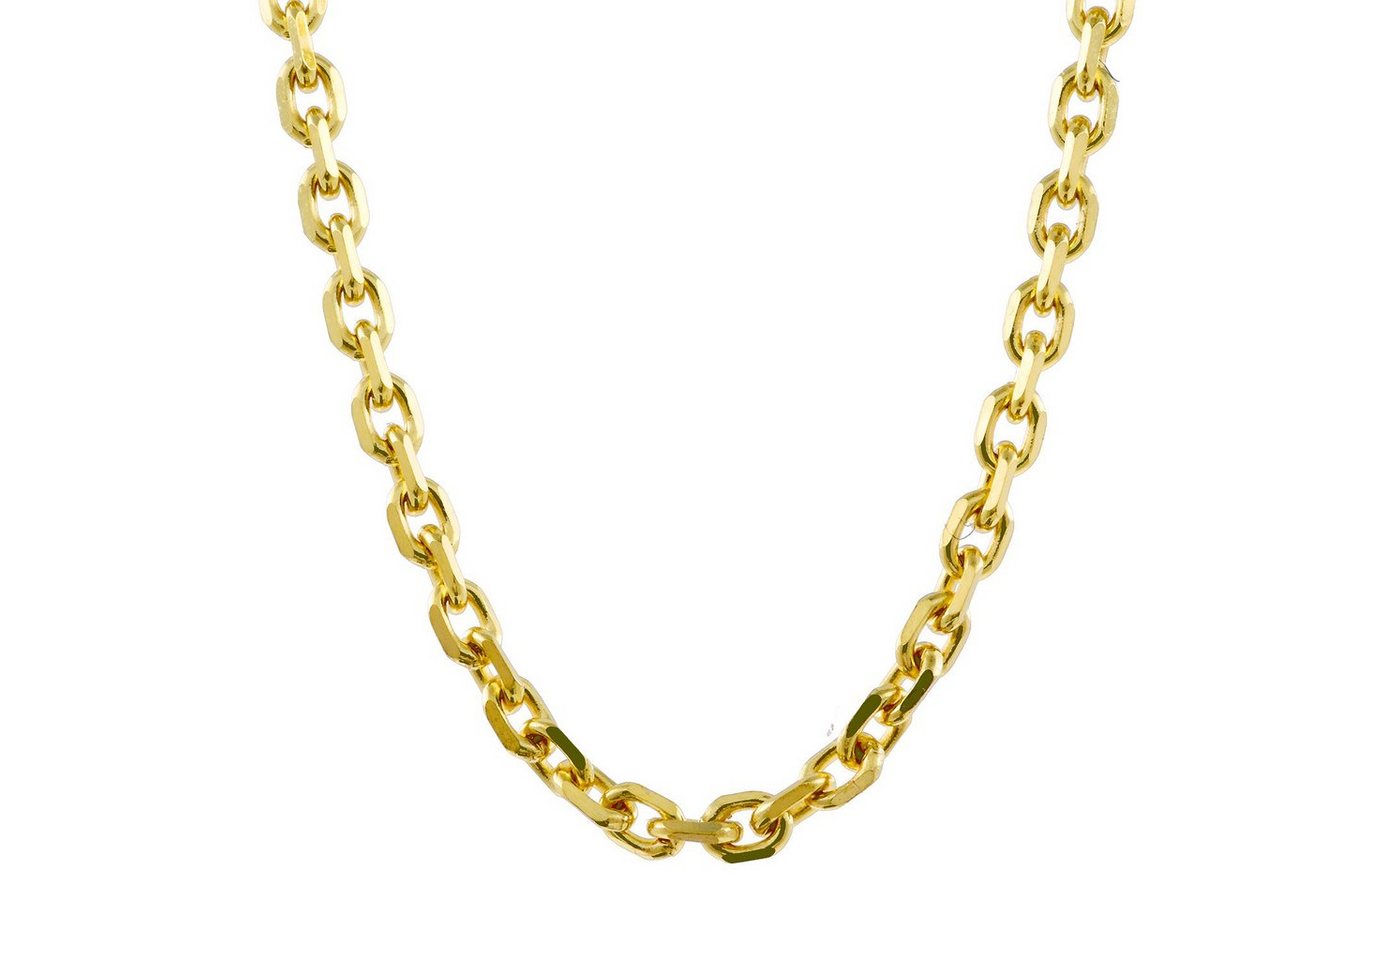 HOPLO Goldkette Ankerkette diamantiert Länge 60cm - Breite 1,3mm - 333-8 Karat Gold, Made in Germany von HOPLO